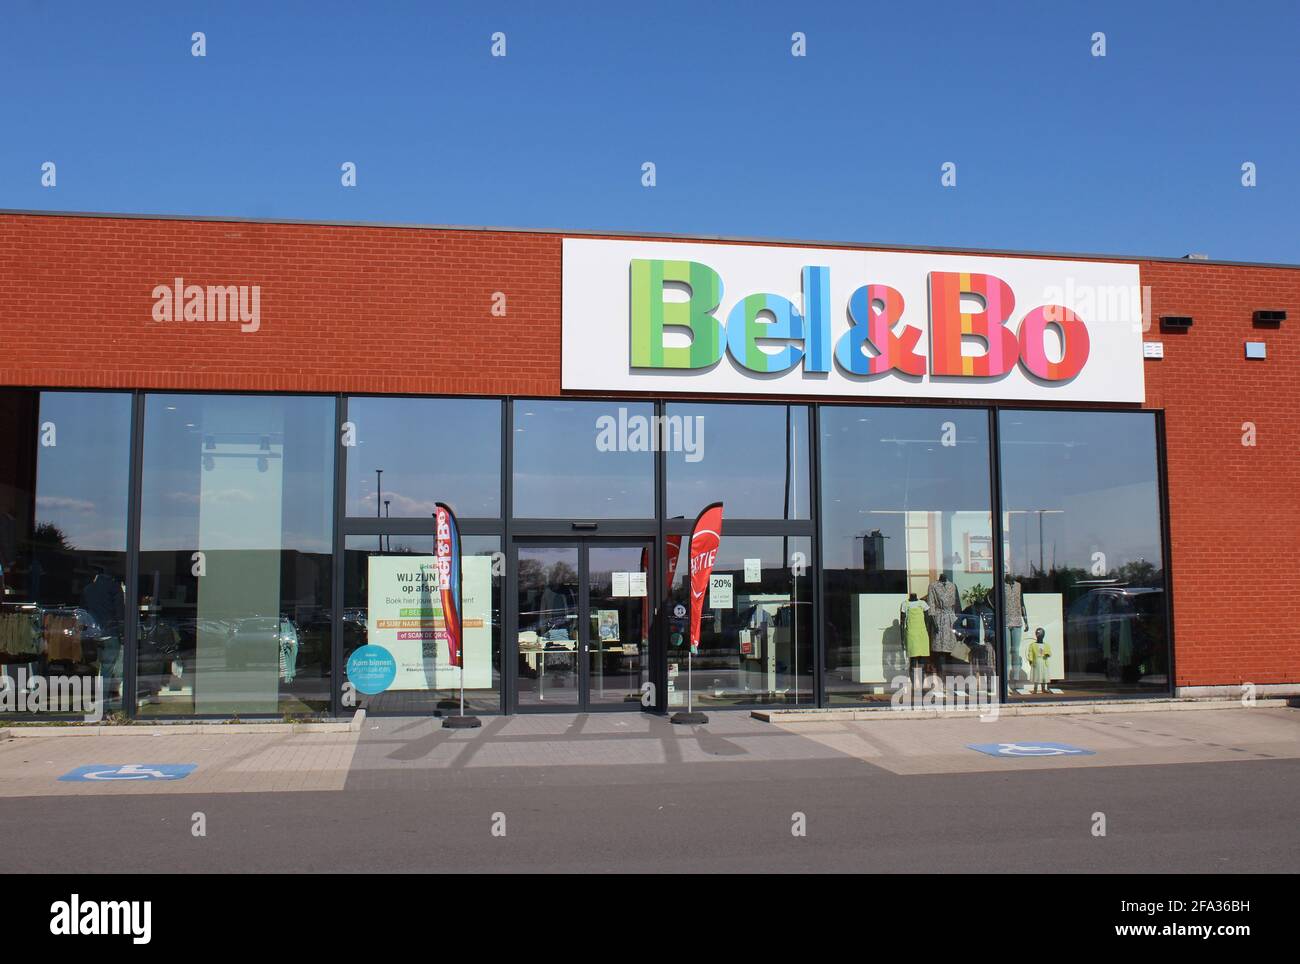 LEBBEKE, BELGIQUE, 17 AVRIL 2021 : vue extérieure d'un magasin de vêtements Bel et Bo. C'est une société et une chaîne de magasins belges qui font la promotion de la qualité à un prix abordable Banque D'Images